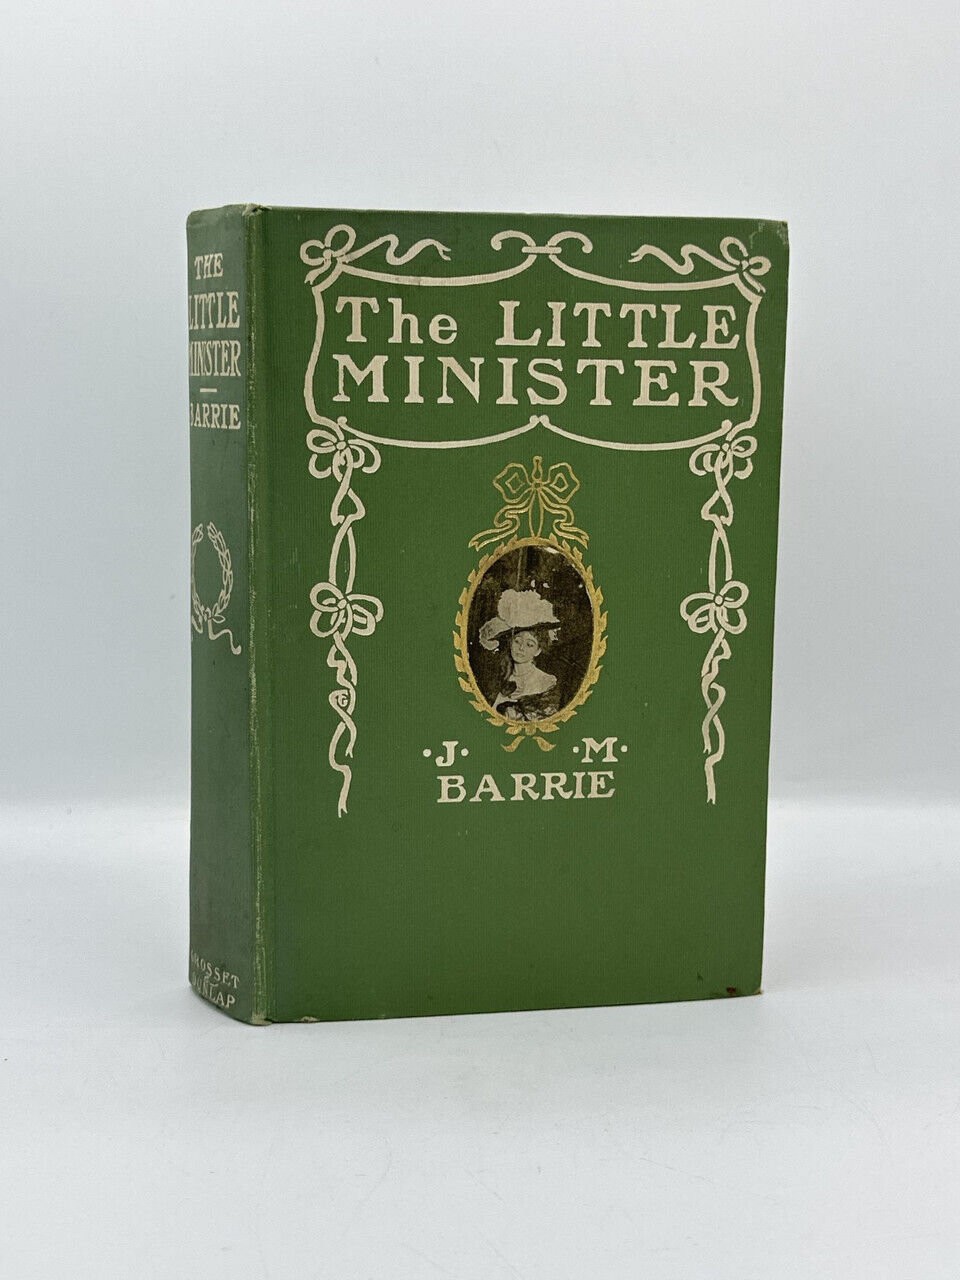 The Little Minister (1897) - JM Barrie